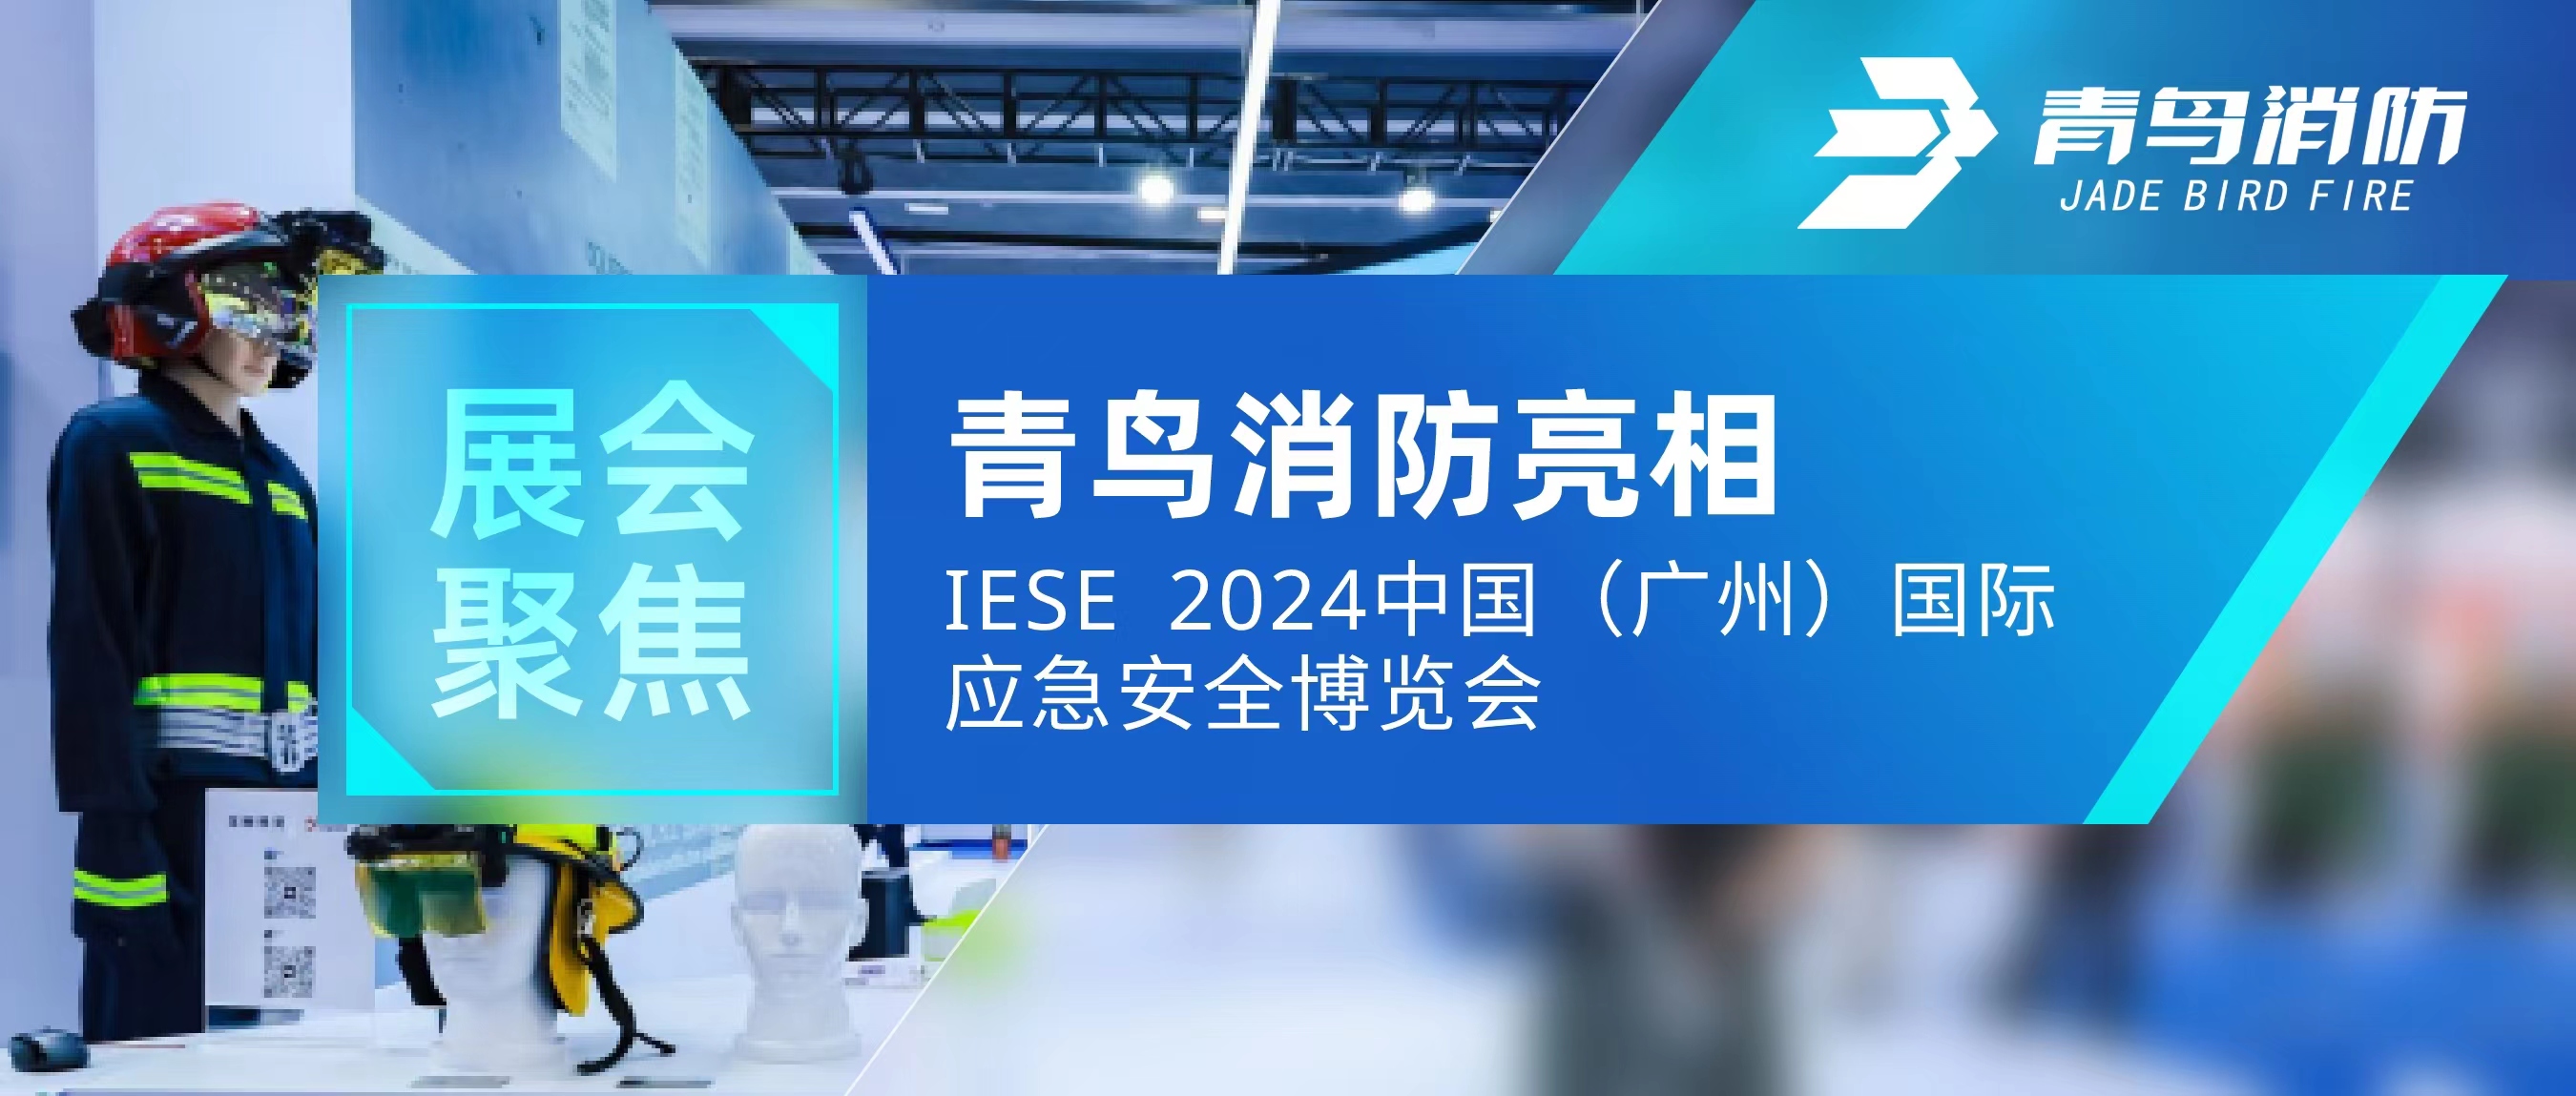 展会聚焦 | 青鸟消防亮相IESE 2024 中国（广州）国际应急安全博览会